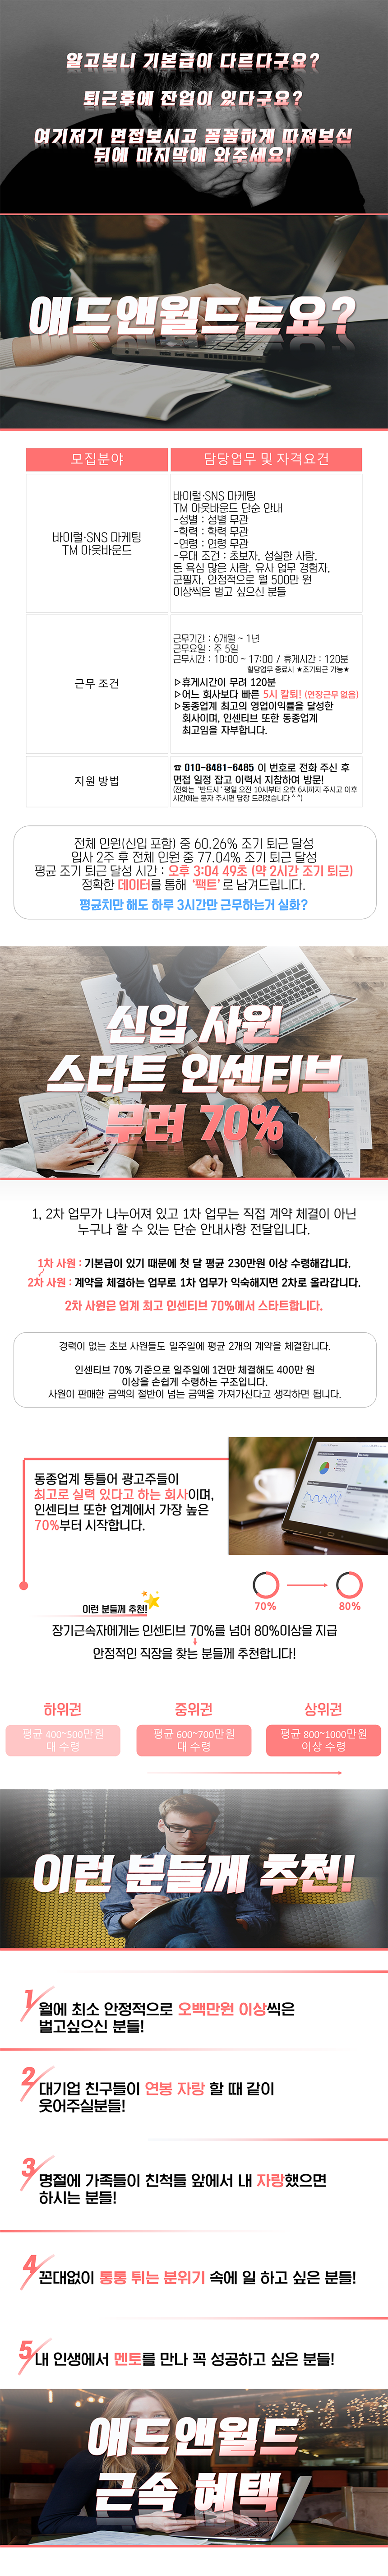 [애드앤월드] 바이럴·SNS 마케팅, TM 아웃바운드 직원 채용